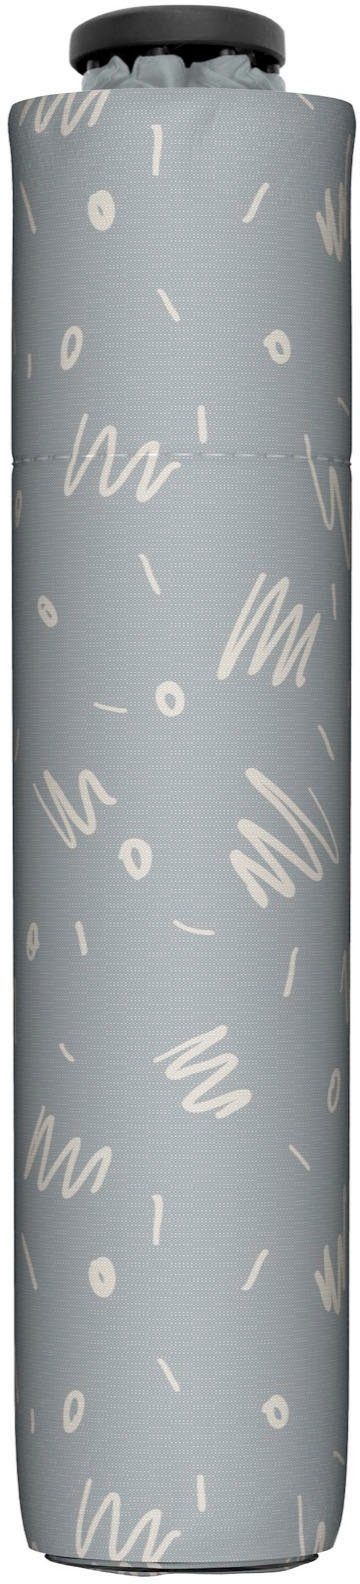 Taschenregenschirm doppler® grey Minimally, zero,99 cool